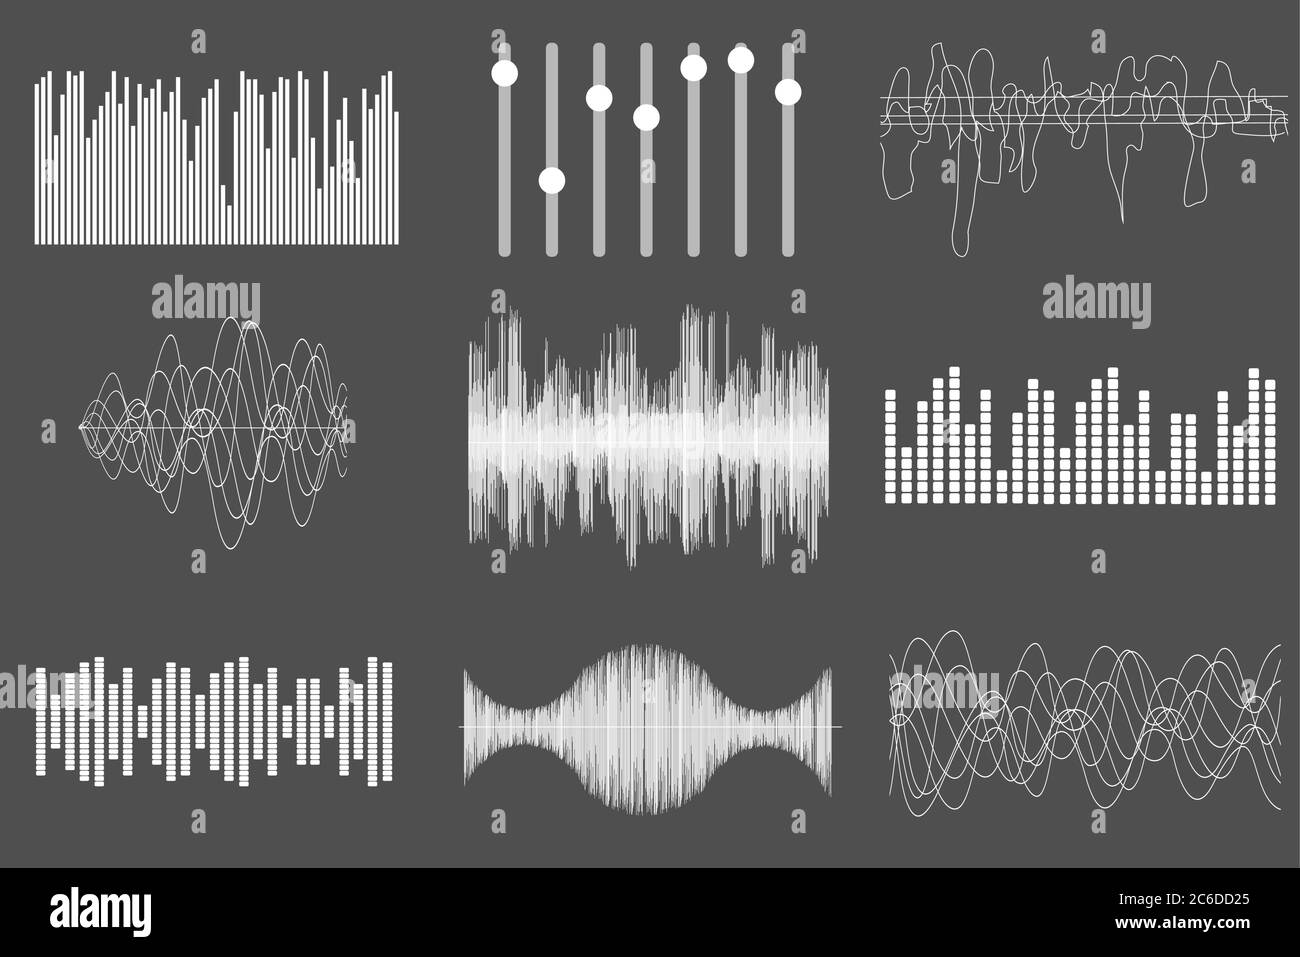 Weißer Sound, Musik, Wellen. Audiotechnik, visueller musikalischer Puls. Vektorgrafik Stock Vektor